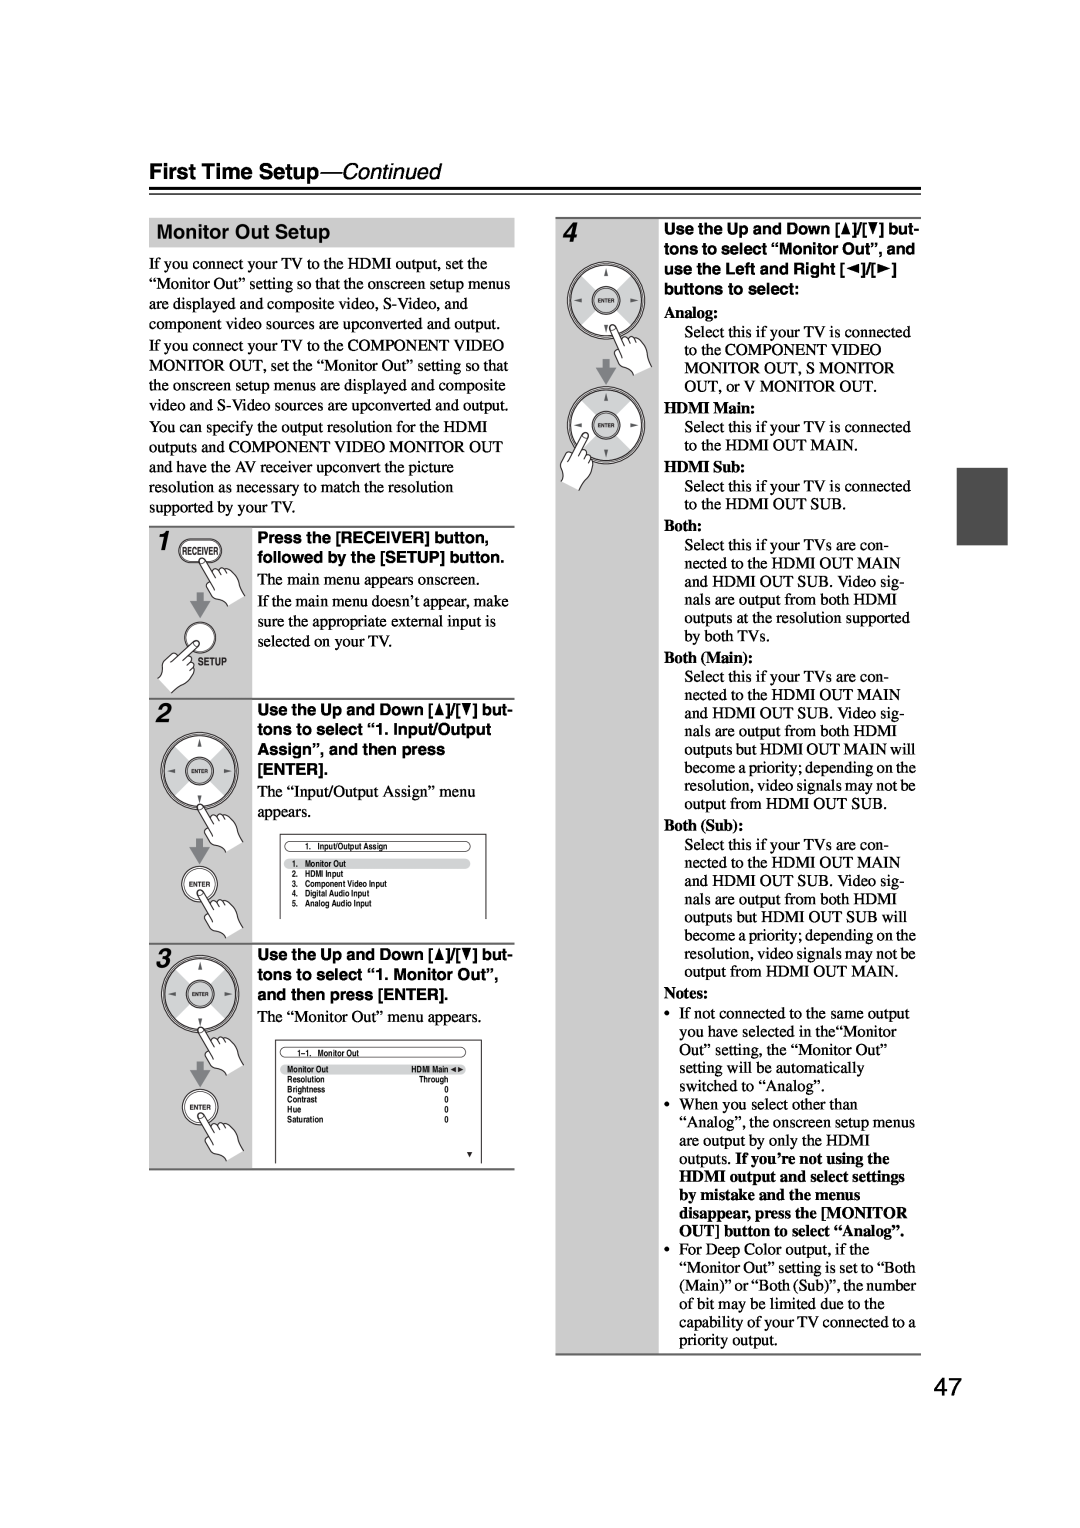 Onkyo TX-NR1007 instruction manual Monitor Out Setup, Analog, HDMI Main, HDMI Sub, Both Main, Both Sub, Notes 